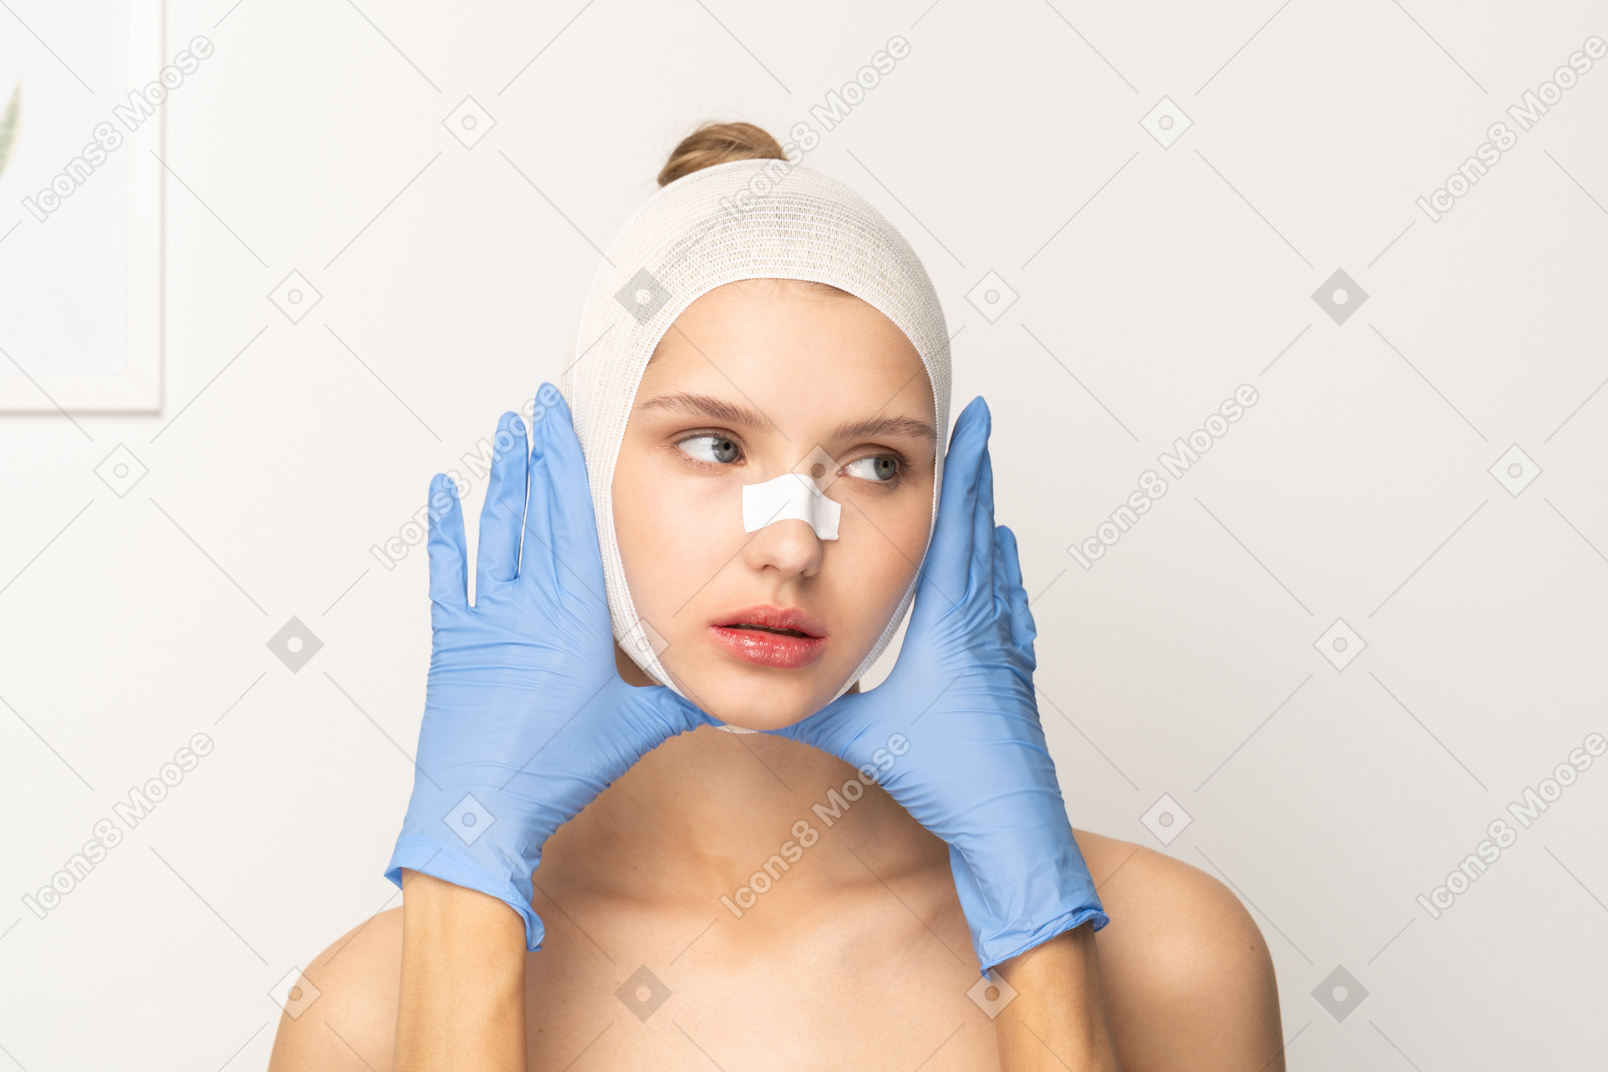 Пациентка с руками в перчатках, обрамляющими лицо